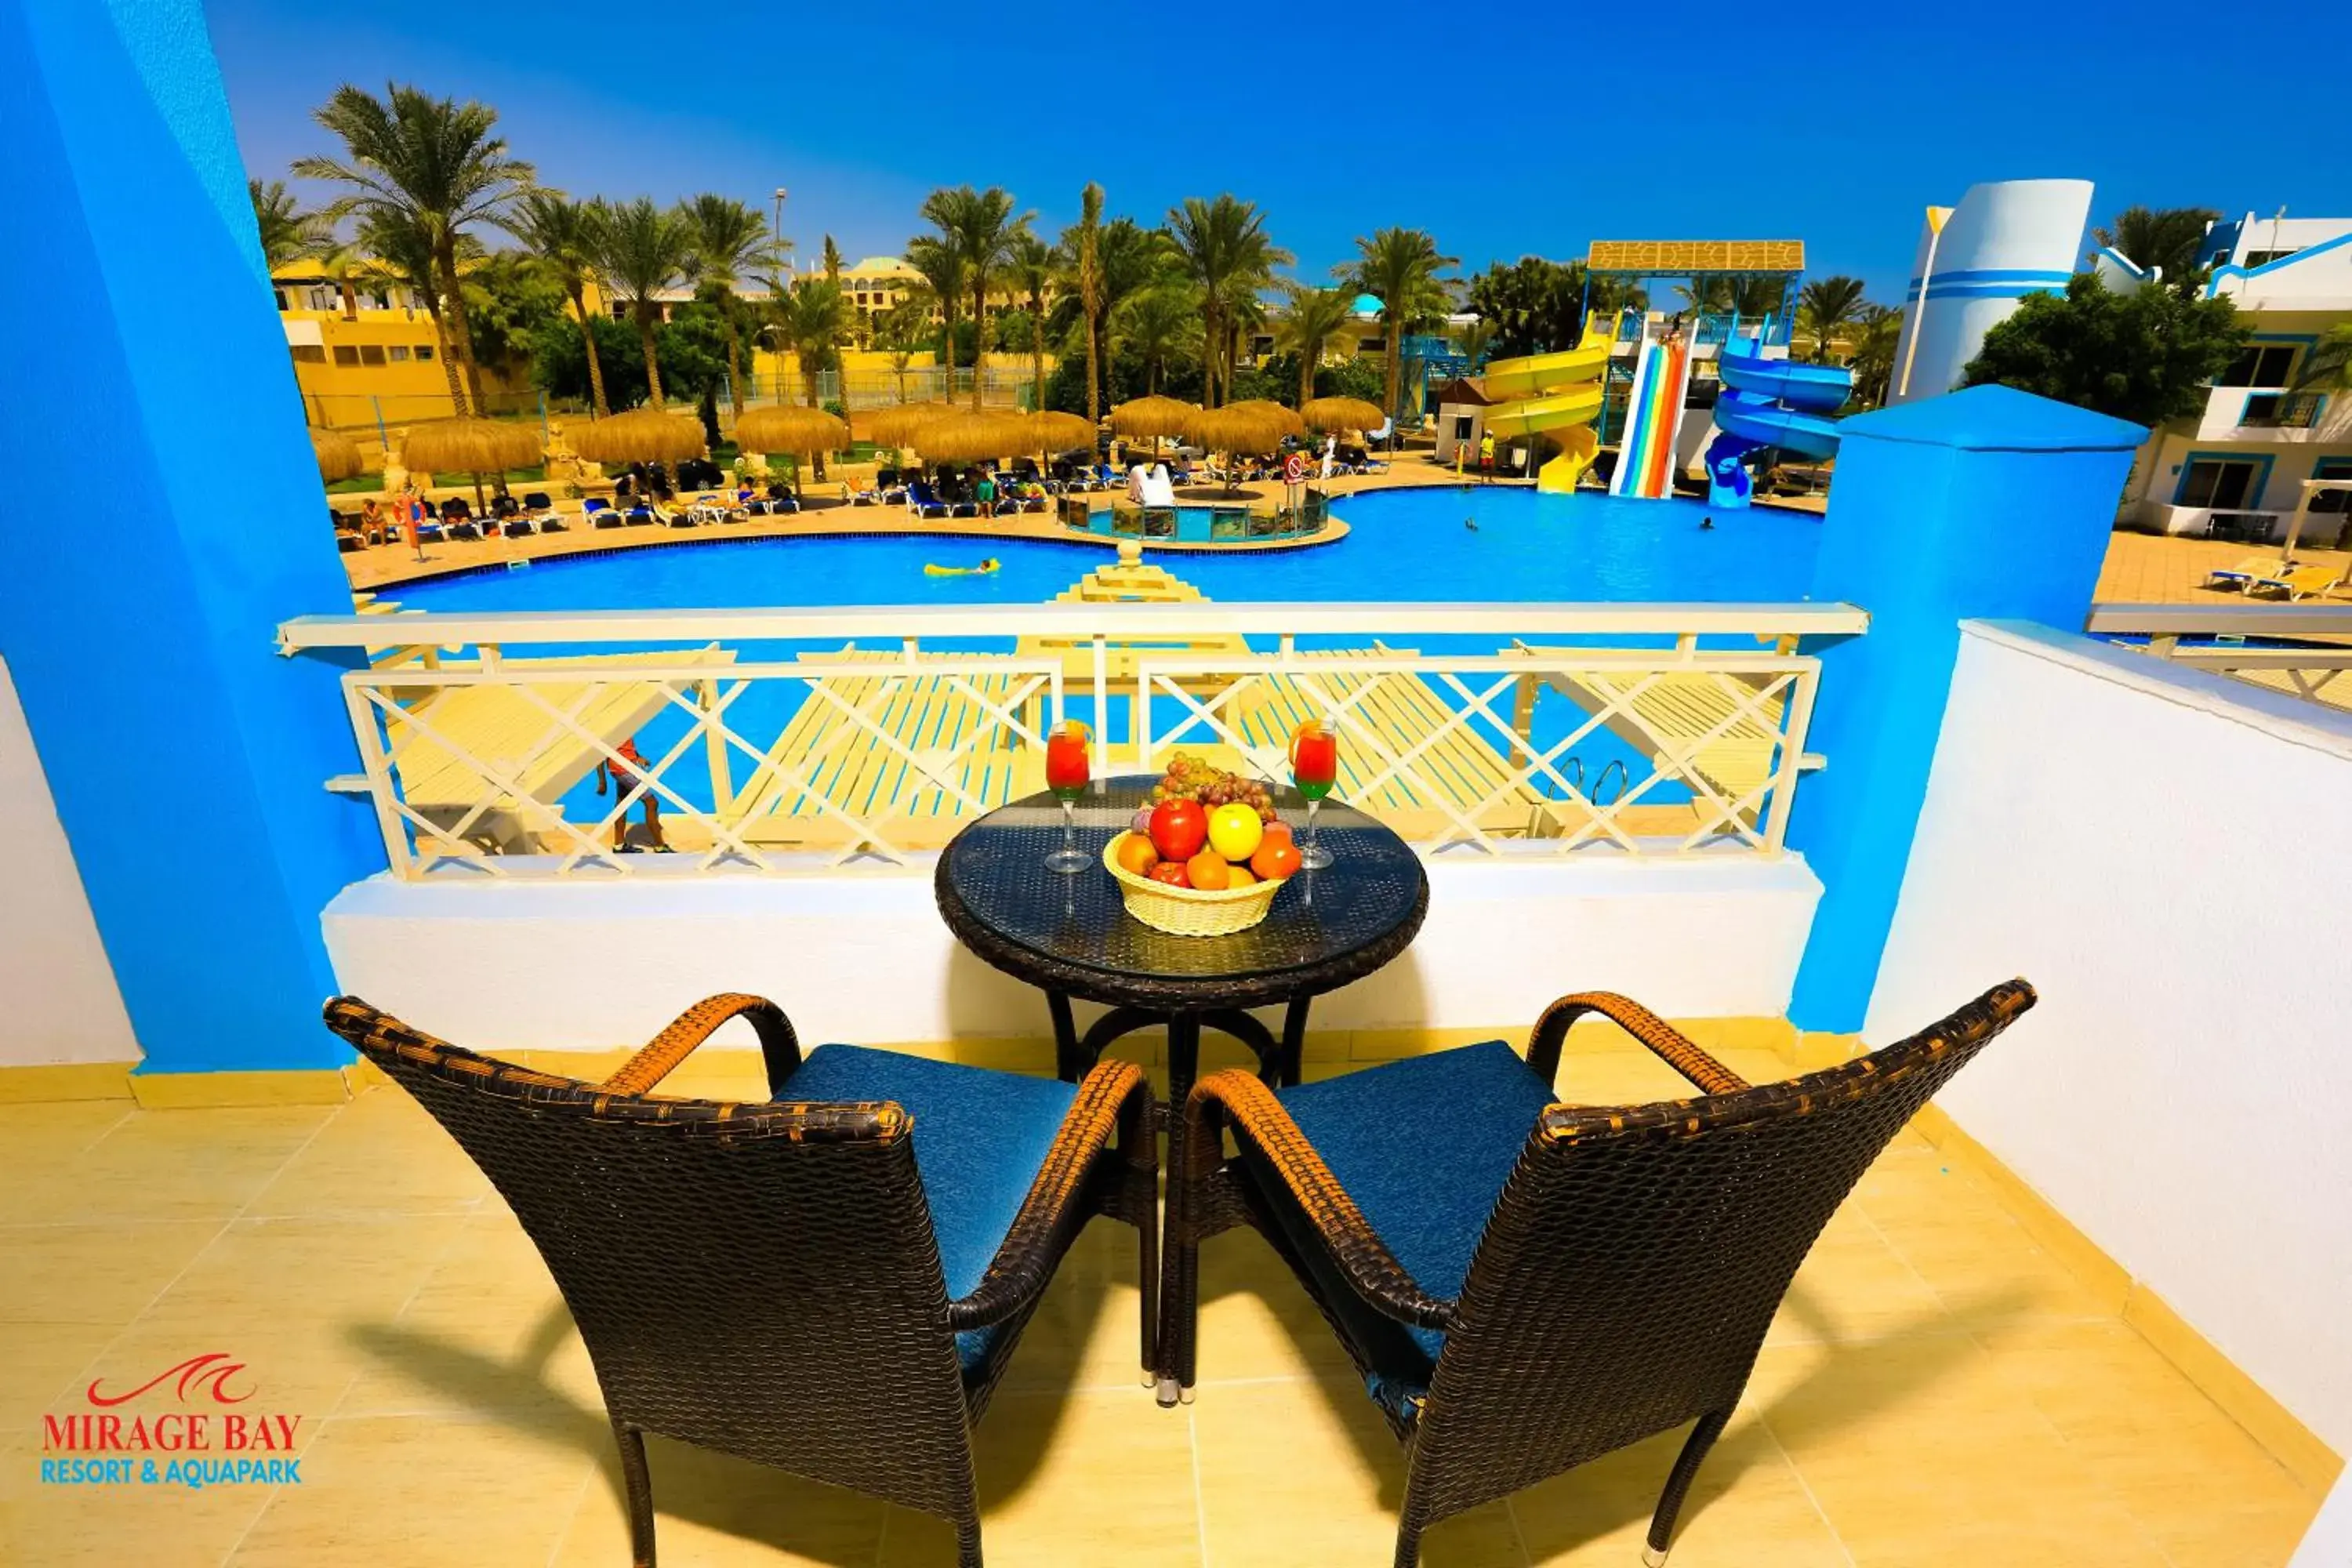 Pool view, Swimming Pool in Mirage Bay Resort & Aqua Park